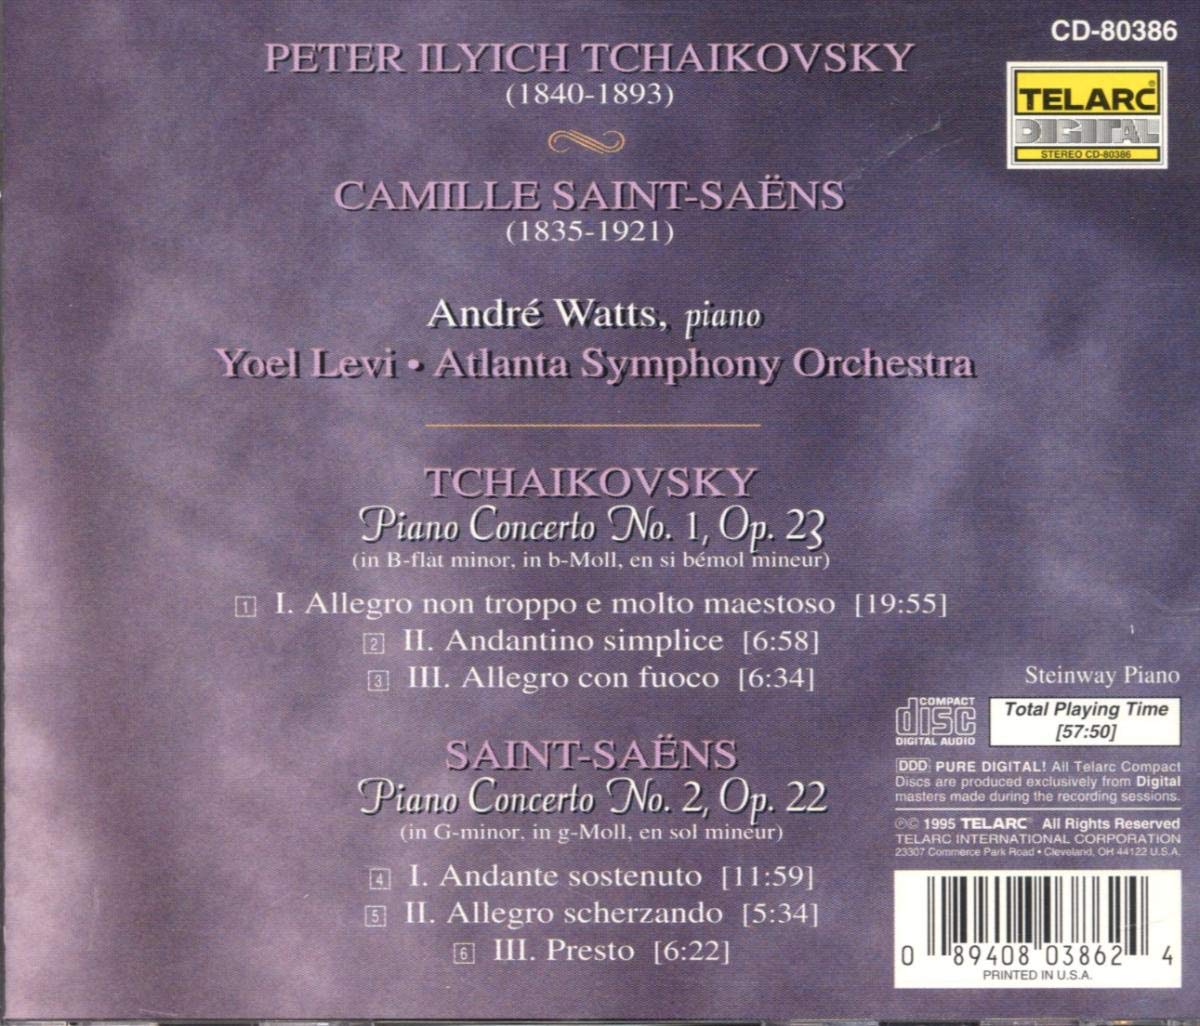 TCHAIKOVSKY: PIANO CONCERTO NO. 1; SAINT-SAENS: PIANO CONCERTO NO. 2 - Andre Watts, Yoel Levi, Atlanta Symphony Orchestra